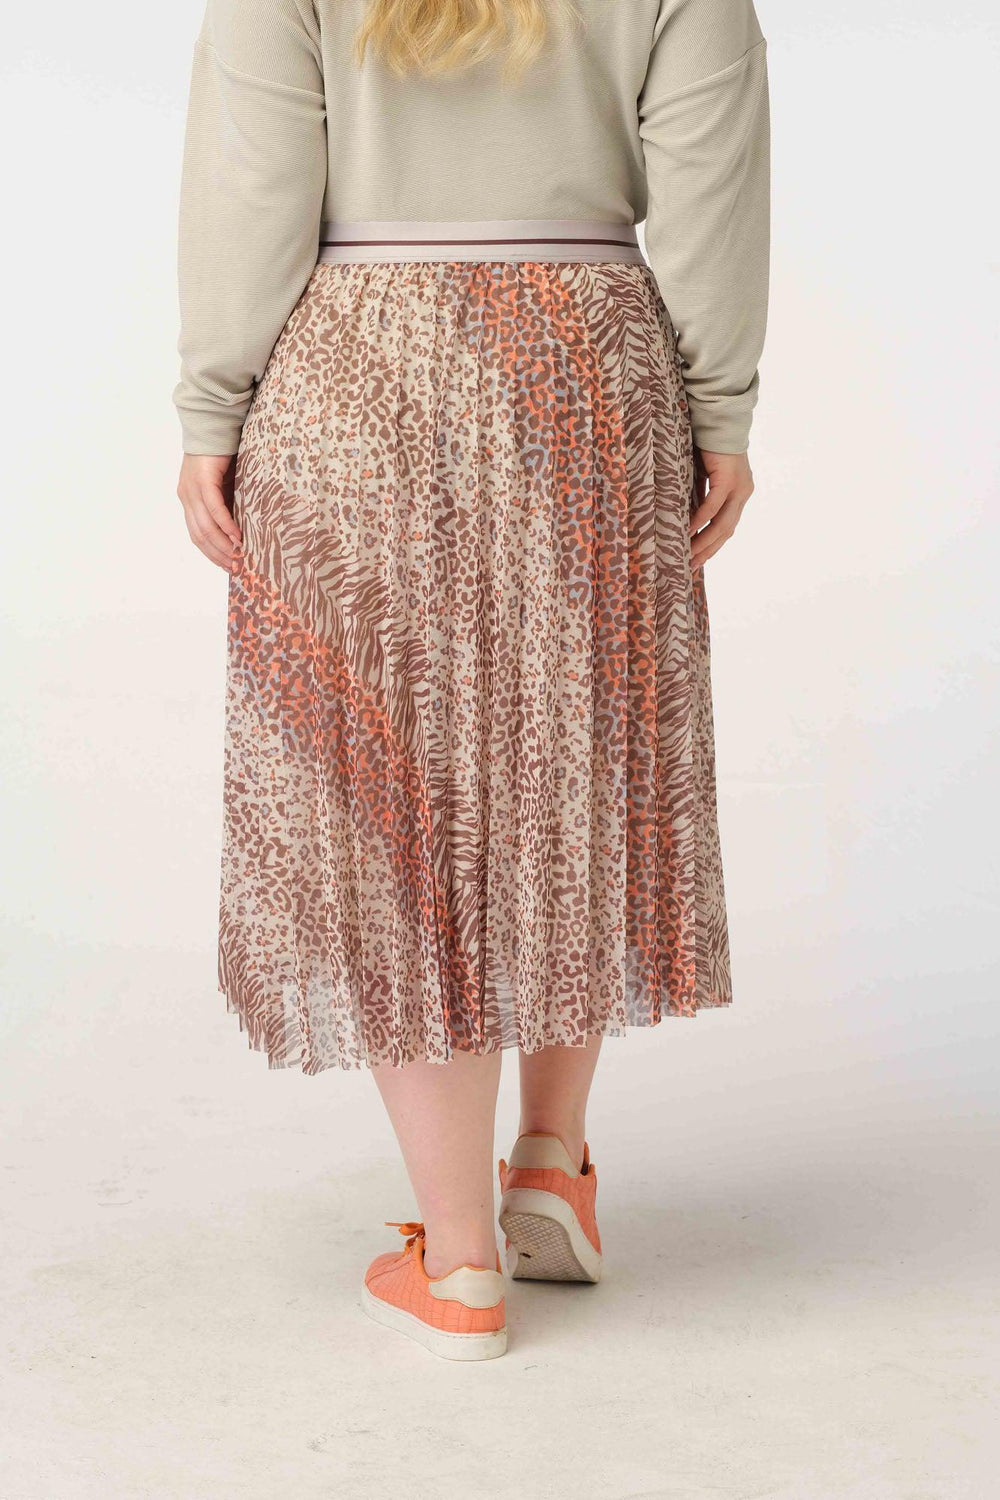 zomerse rok in luchtige mesh en leuke print - no secret - 220126502-8029 - grote maten - dameskleding - kledingwinkel - herent - leuven